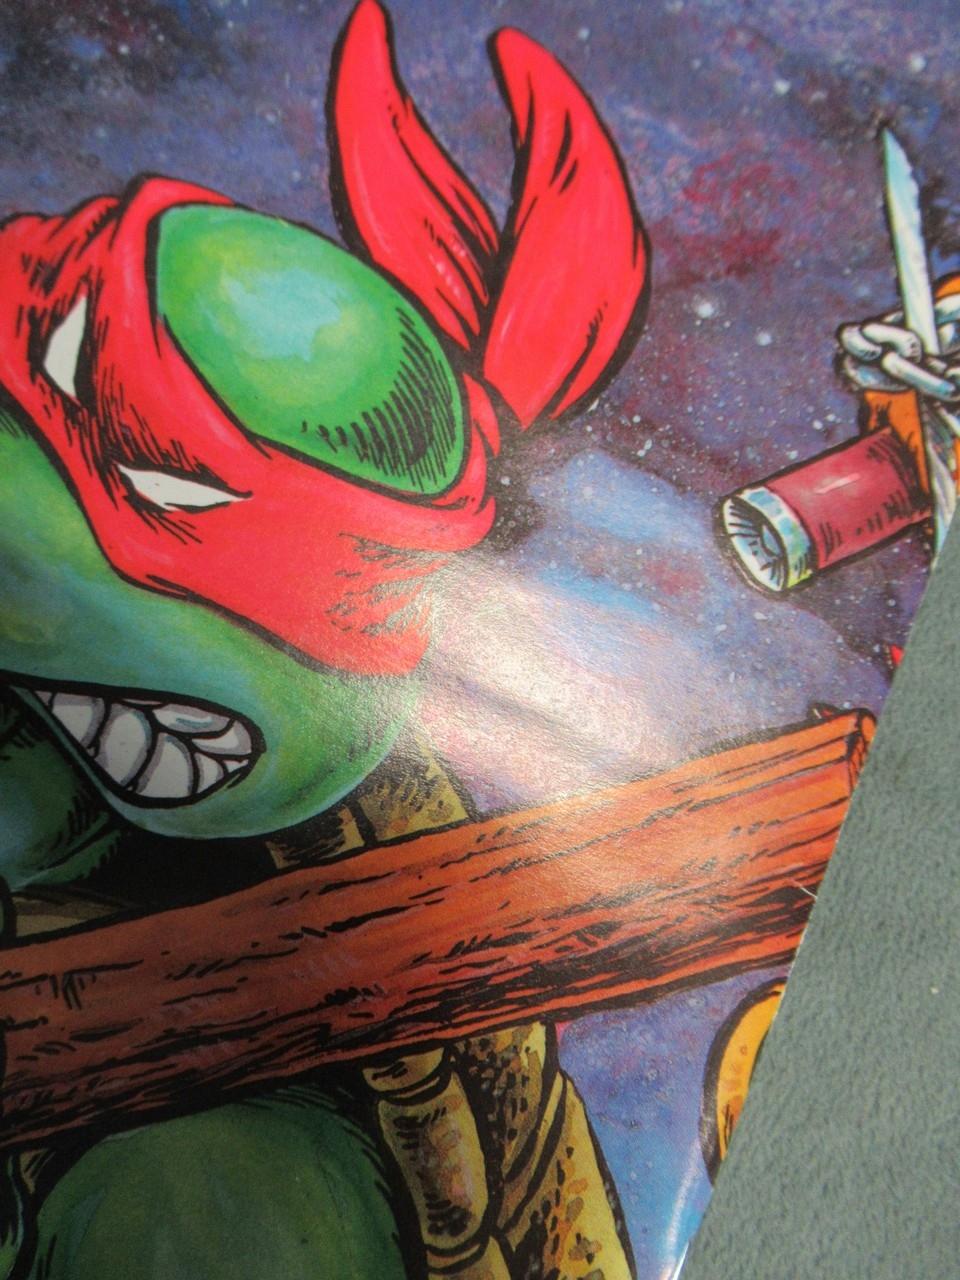 Teenage Mutant Ninja Turtles #6 1986